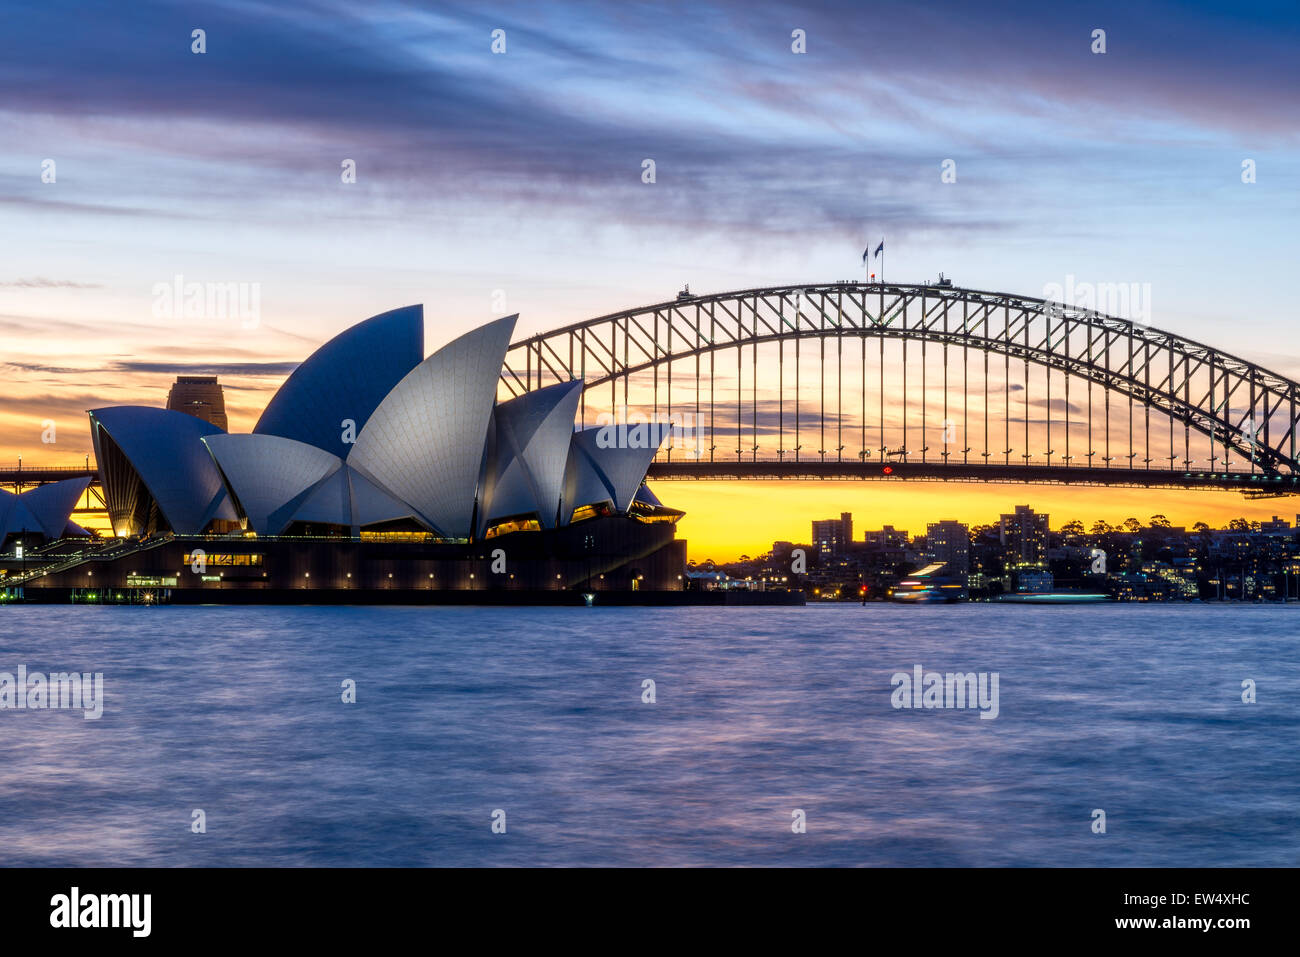 Sydney Opera House and Bridge at sunset Stock Photo